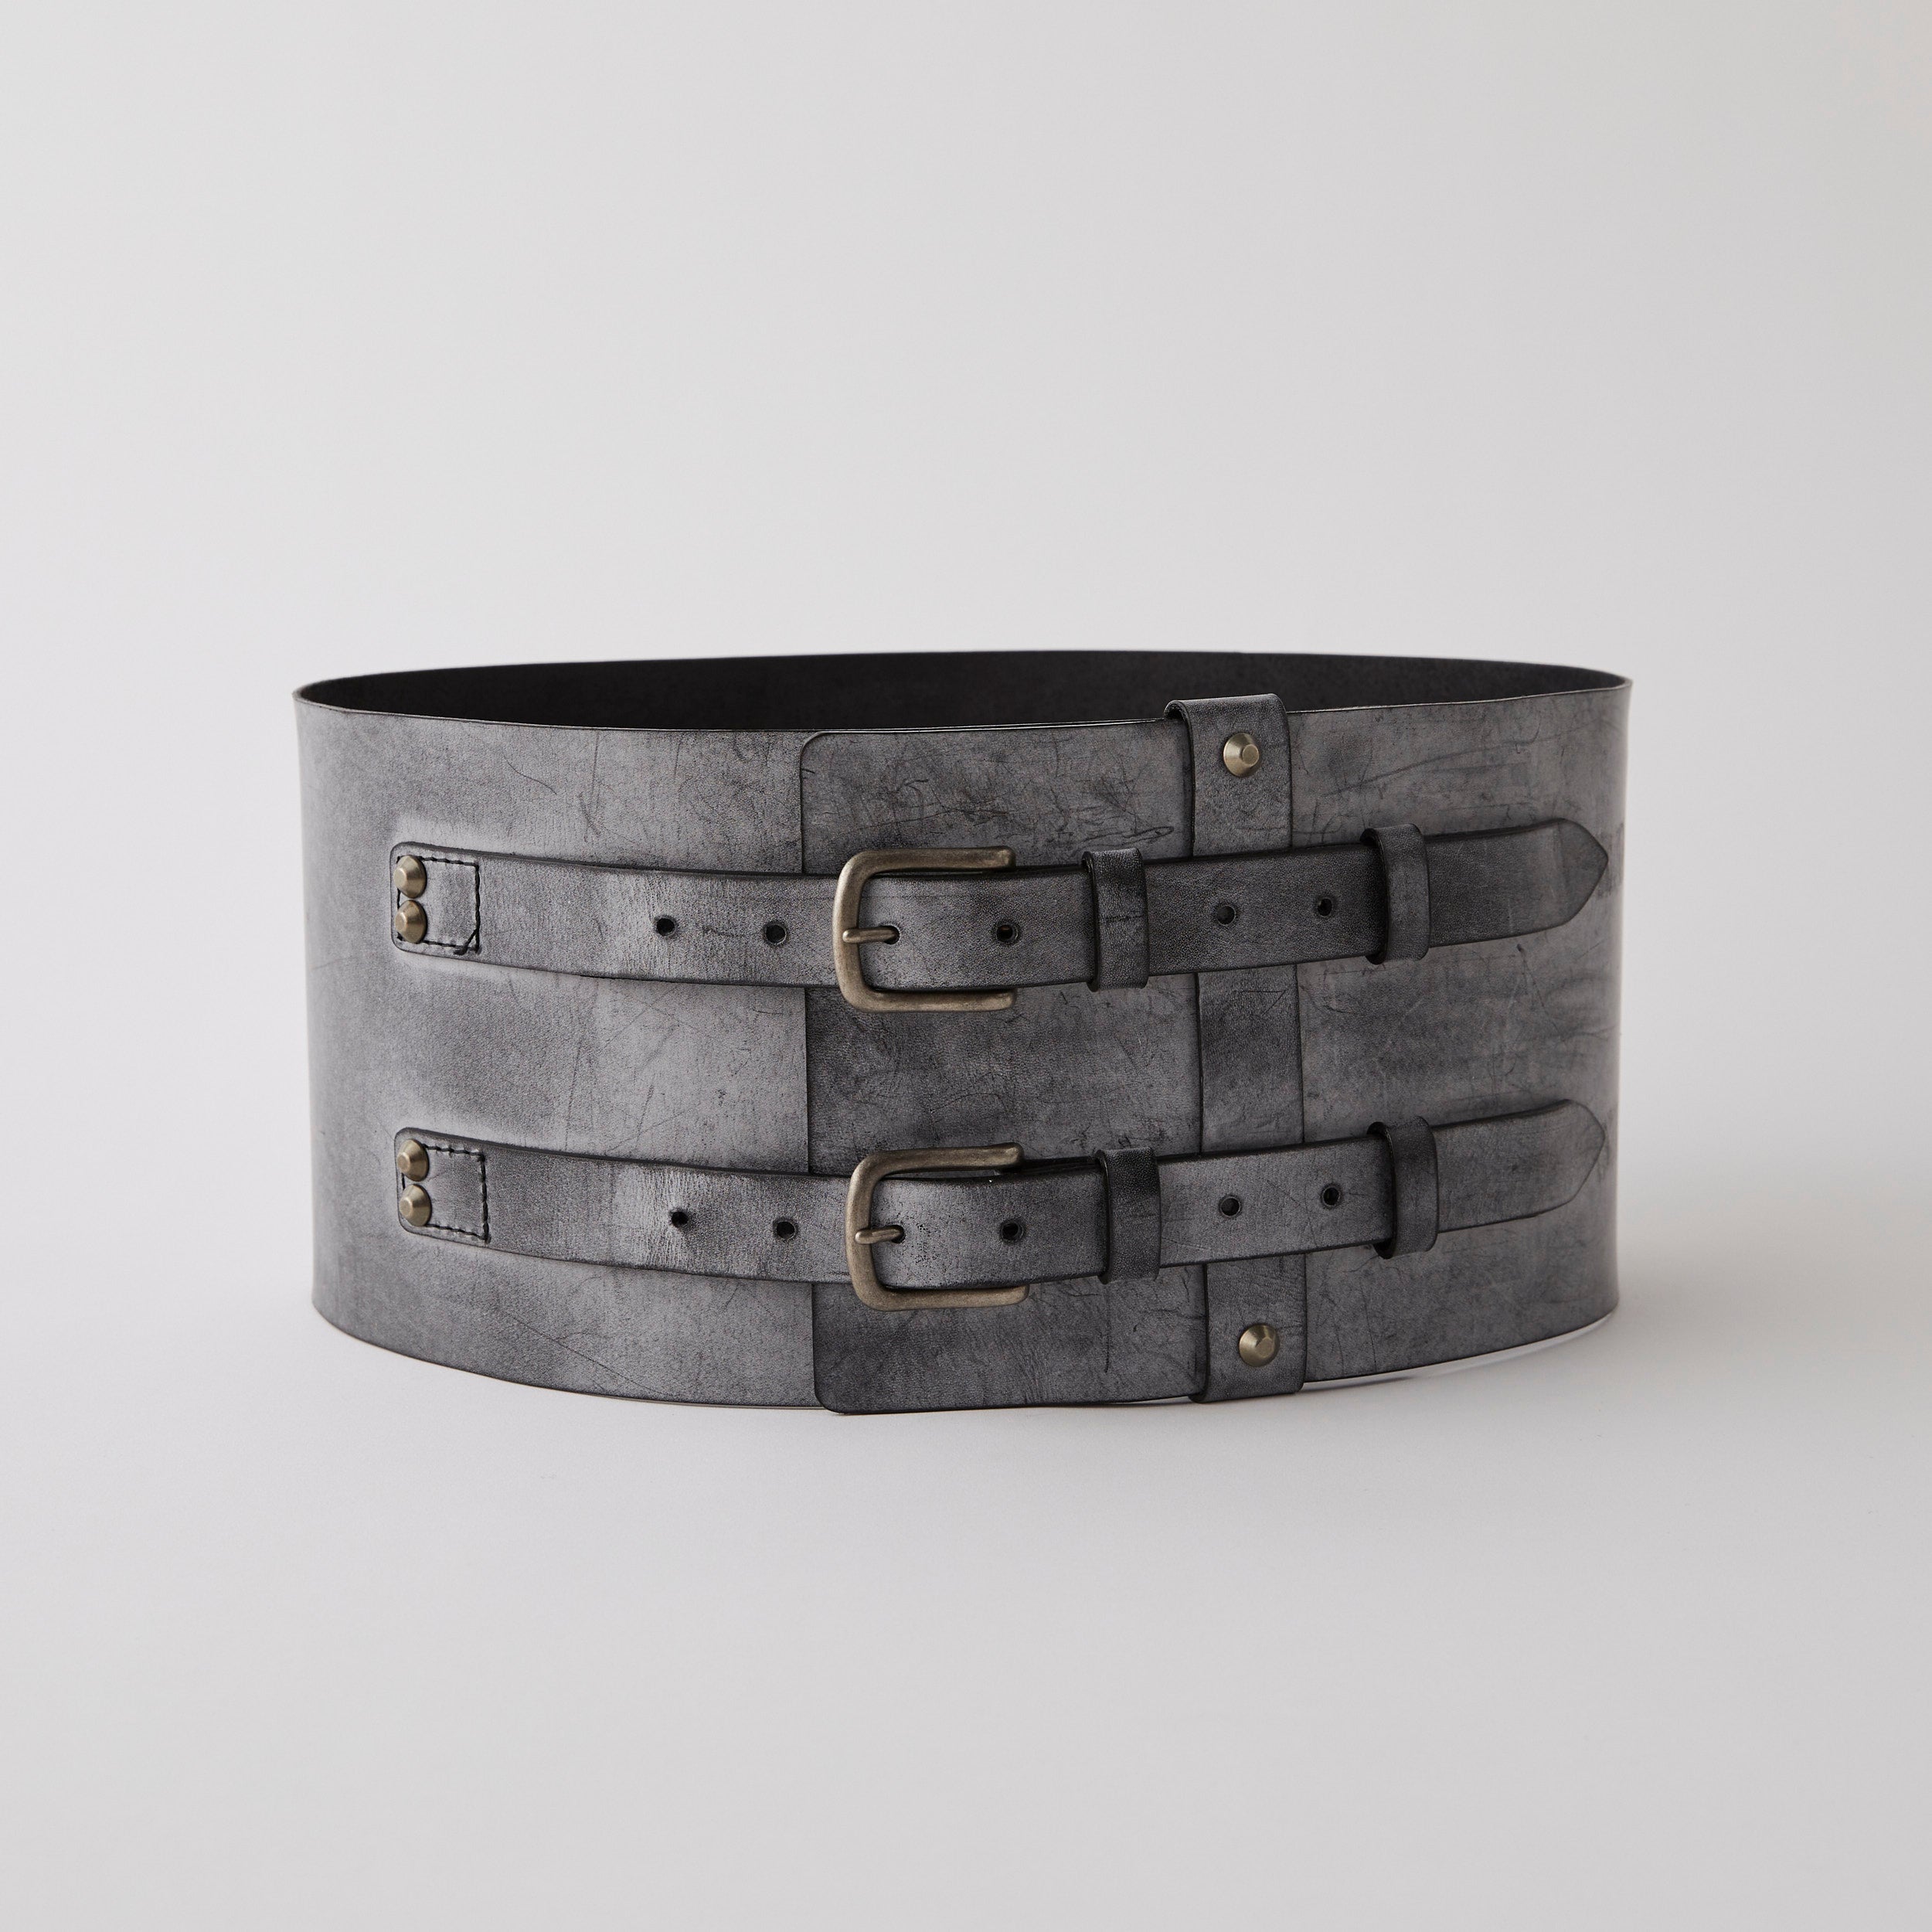 Obi belt "Aging leather natural"